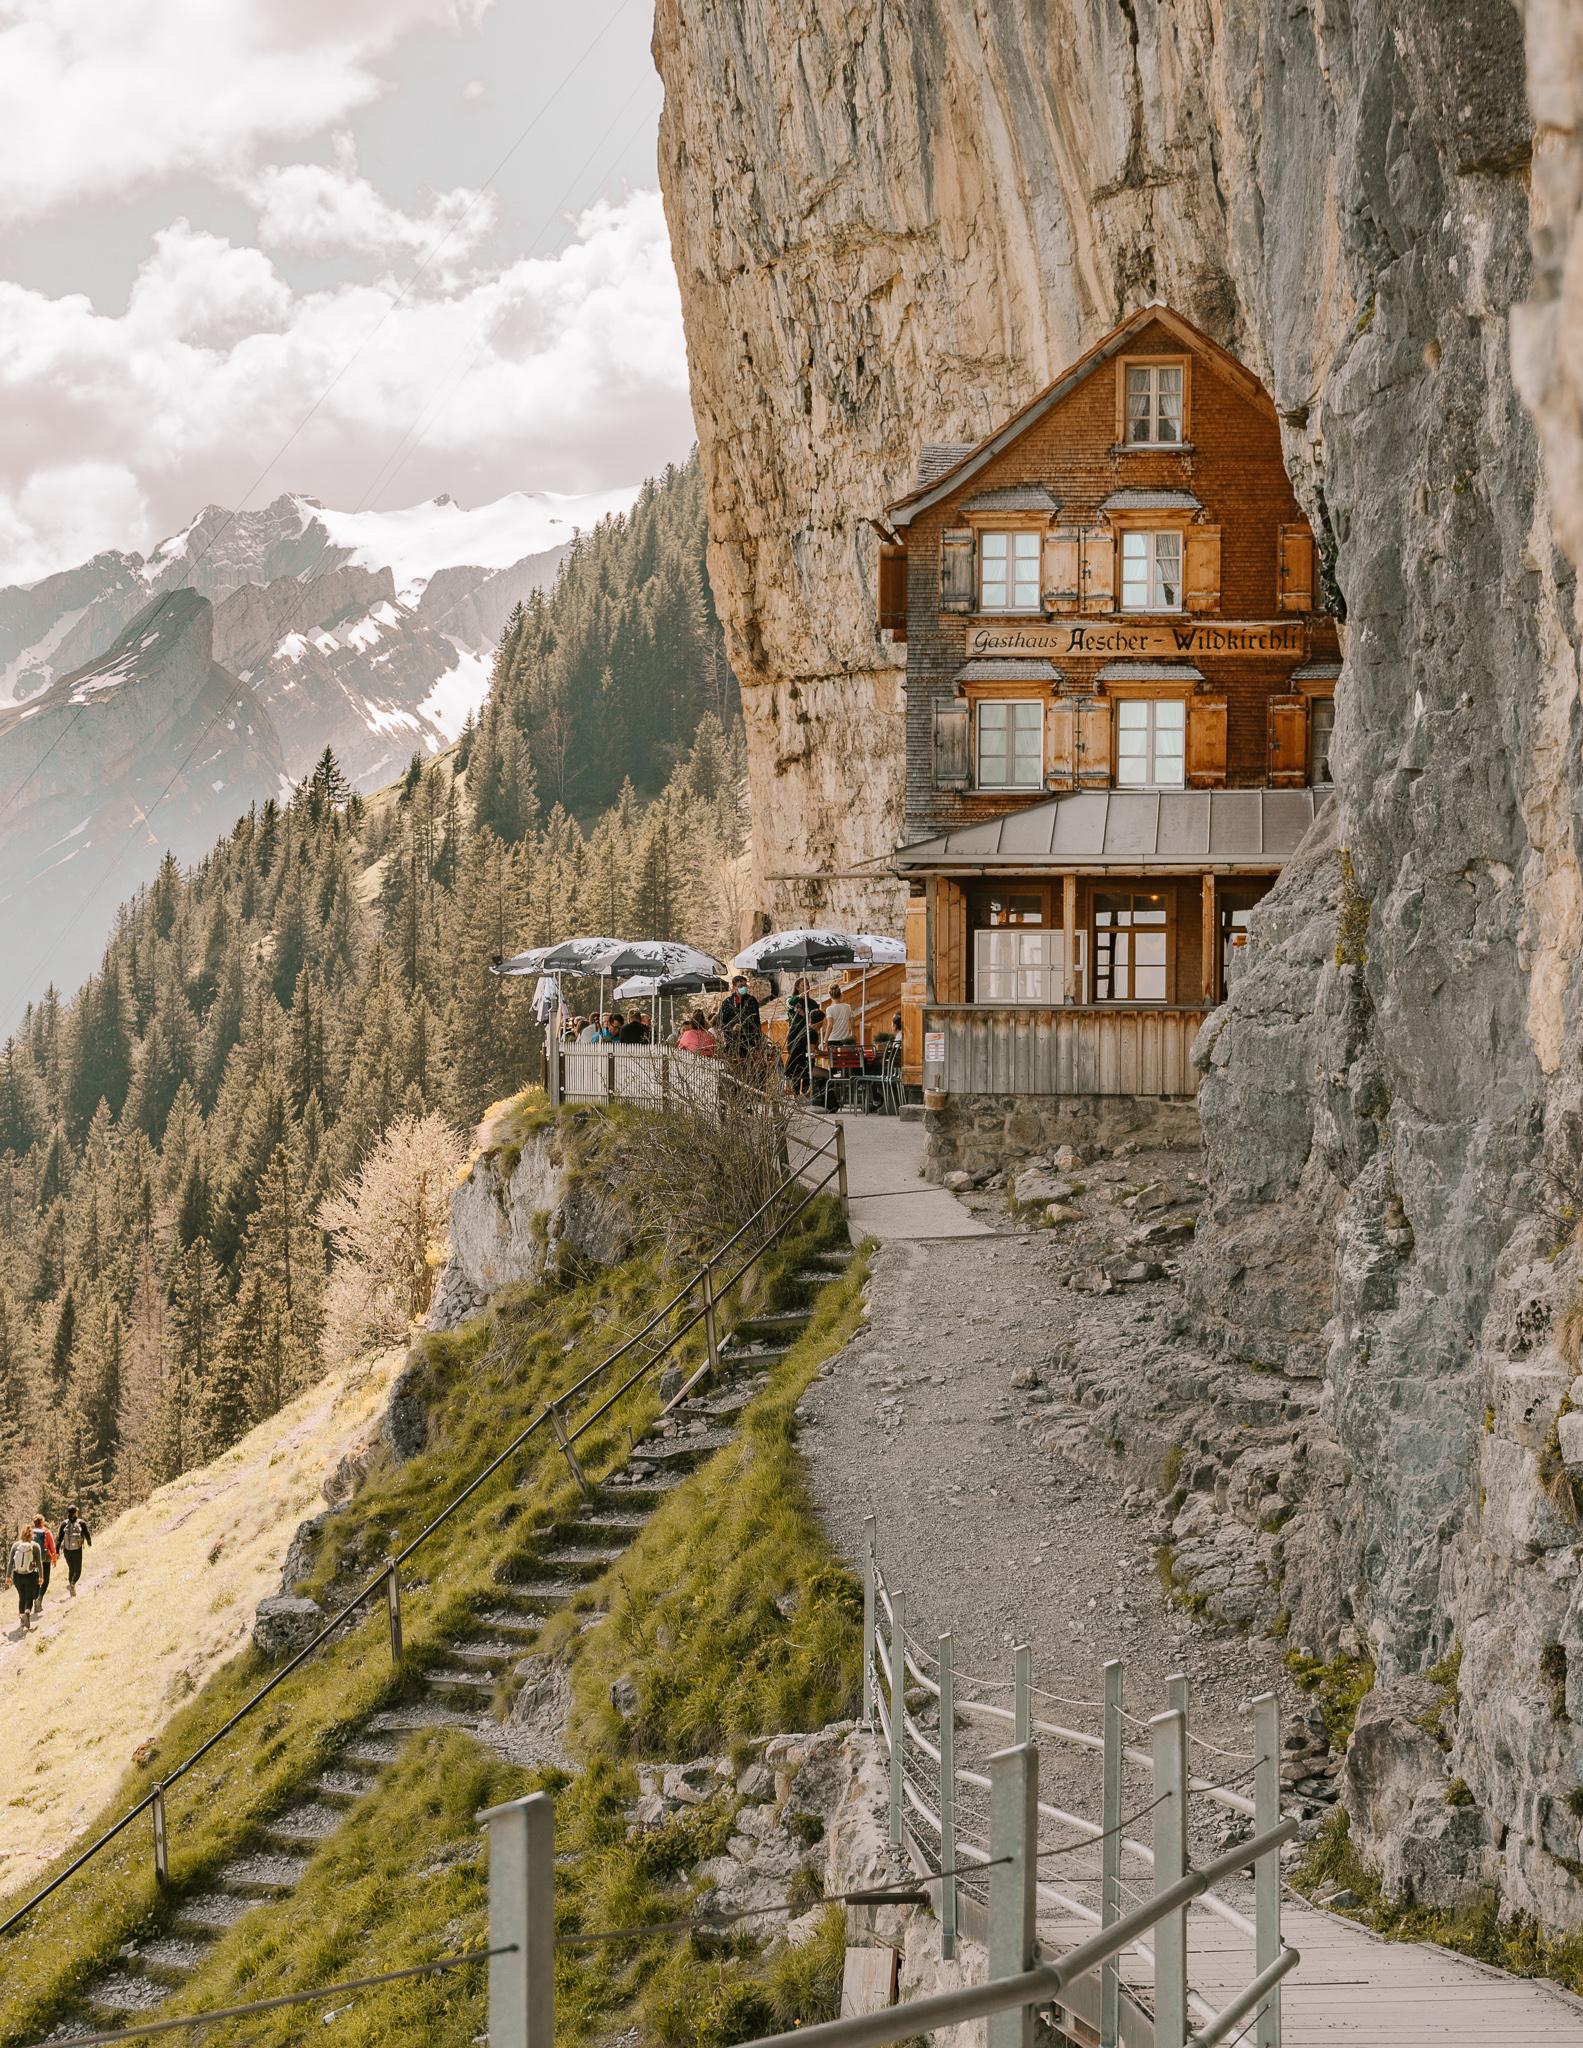 Ebenalp Aescher Guesthouse in Switzerland